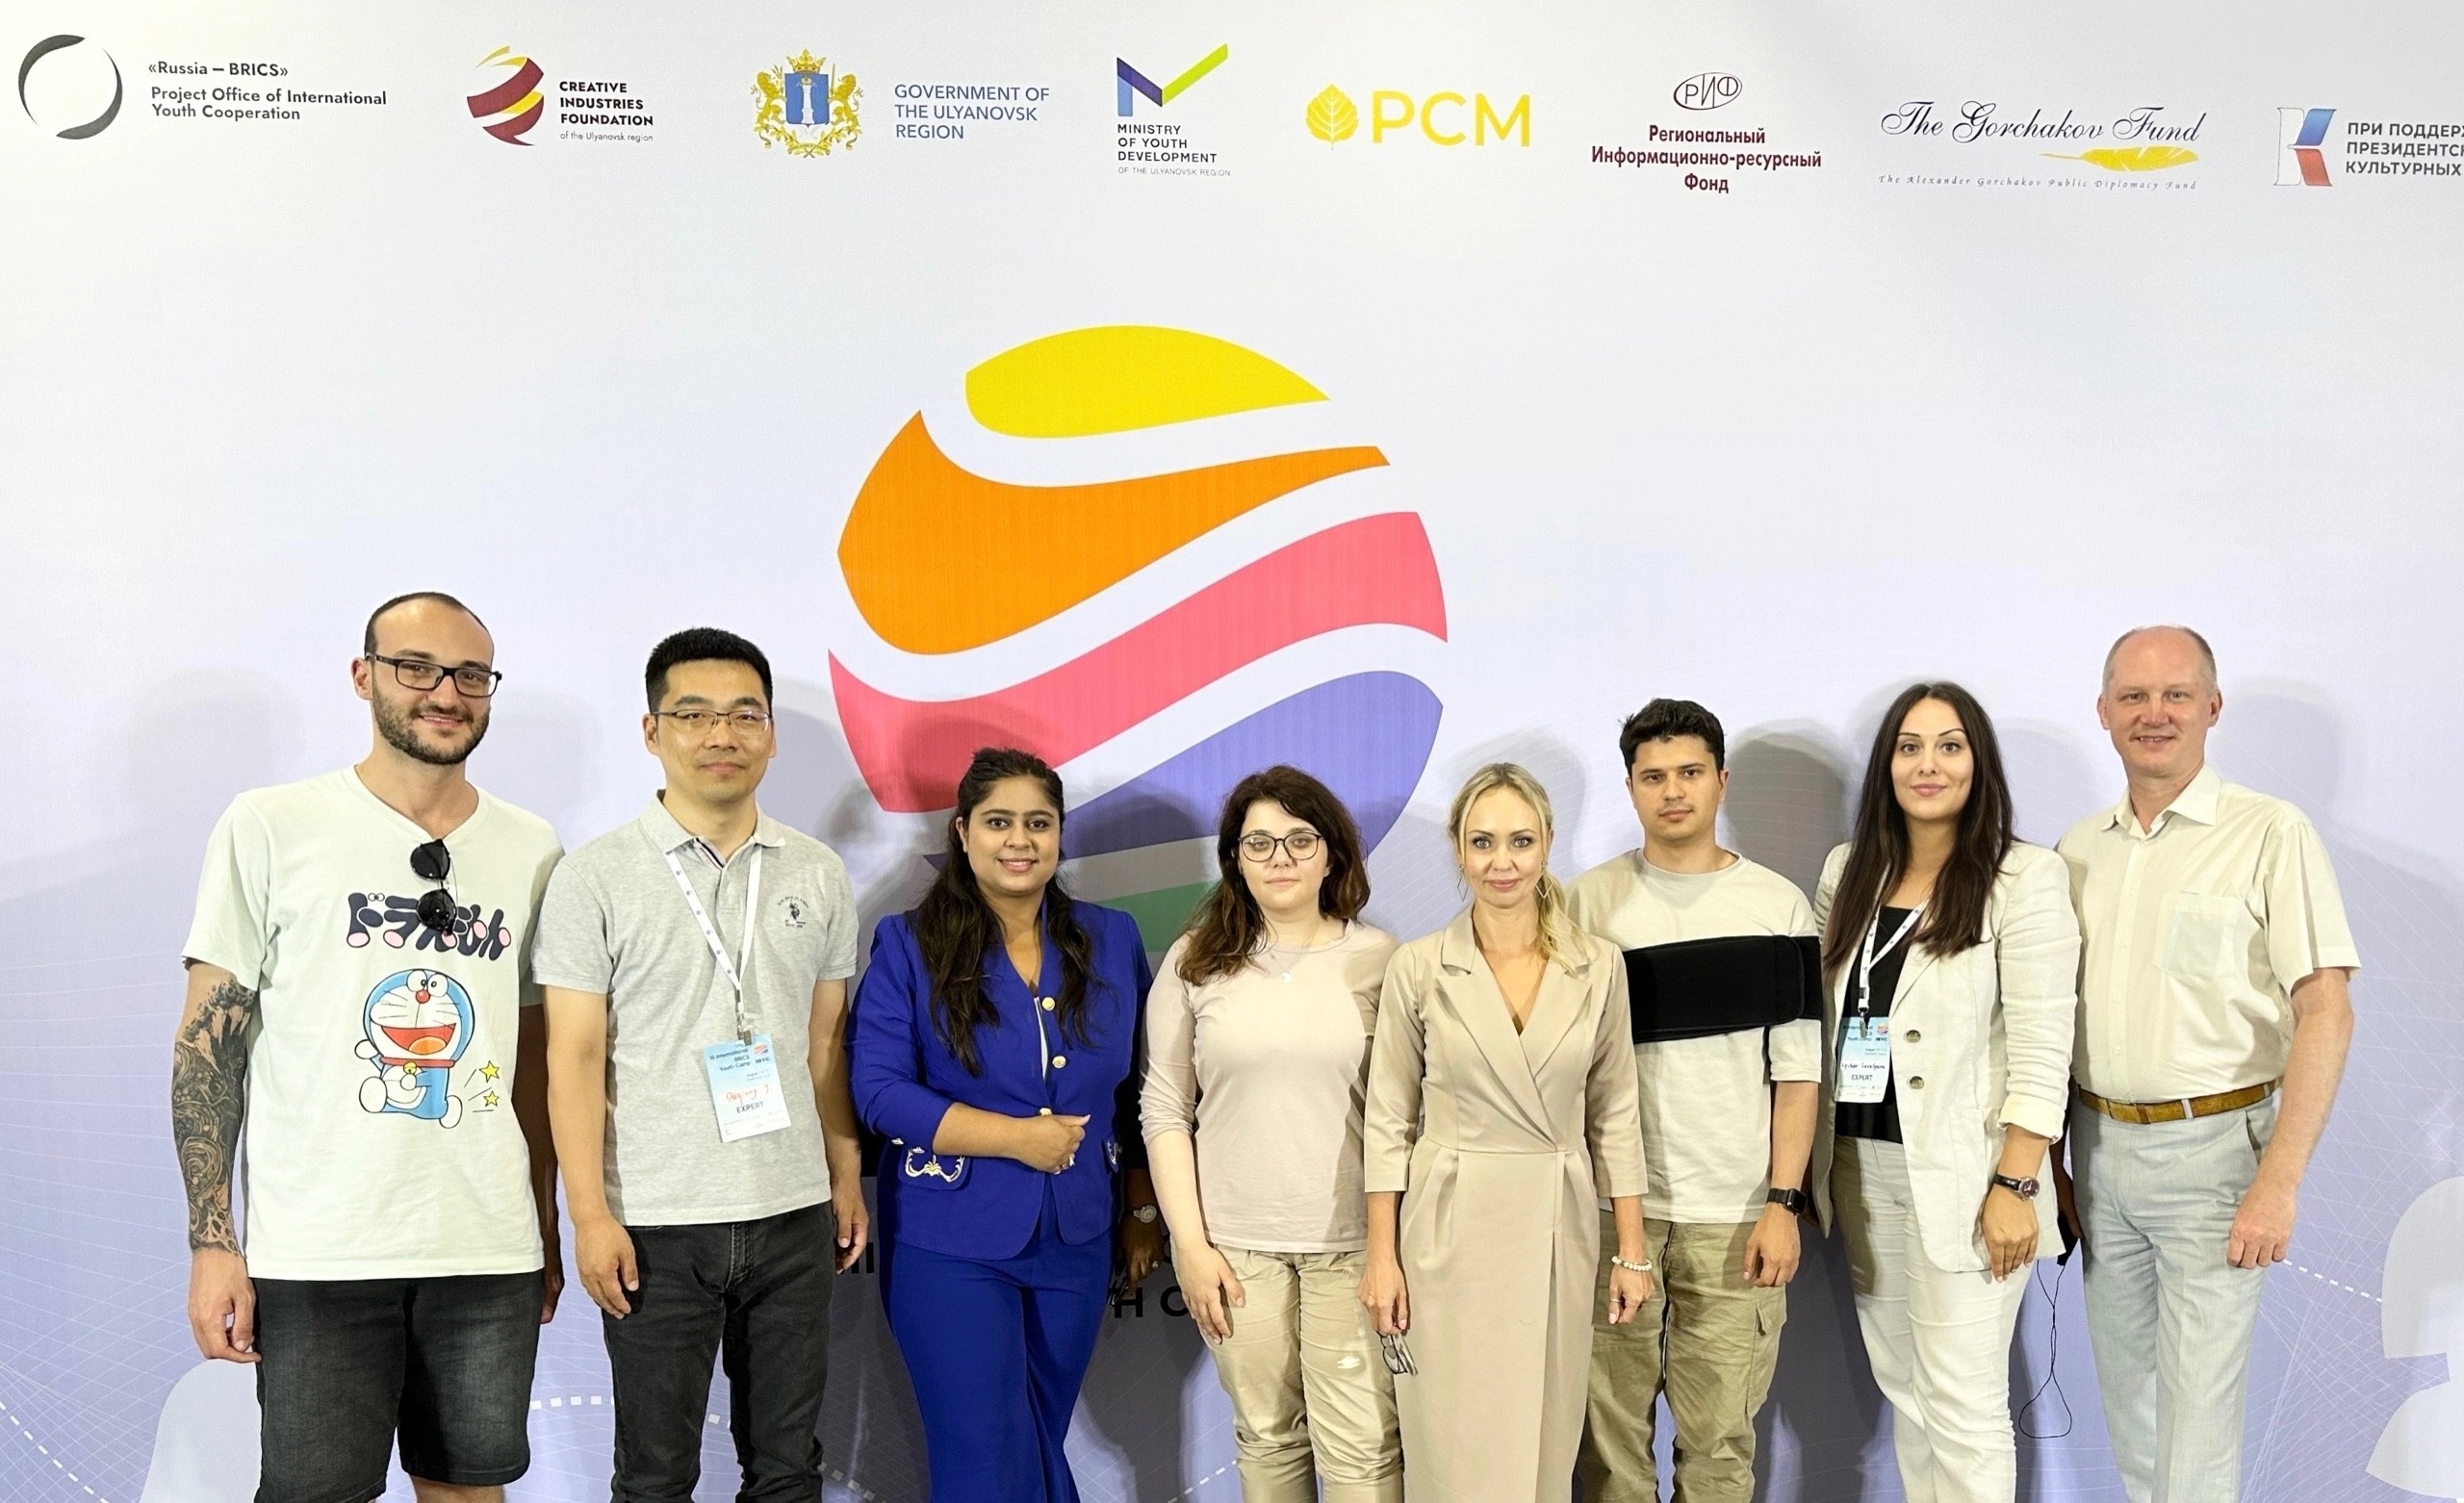 Преподаватели и иностранные студенты УлГПУ приняли участие в разработке концепции медиаресурса в рамках молодежного лагеря БРИКС